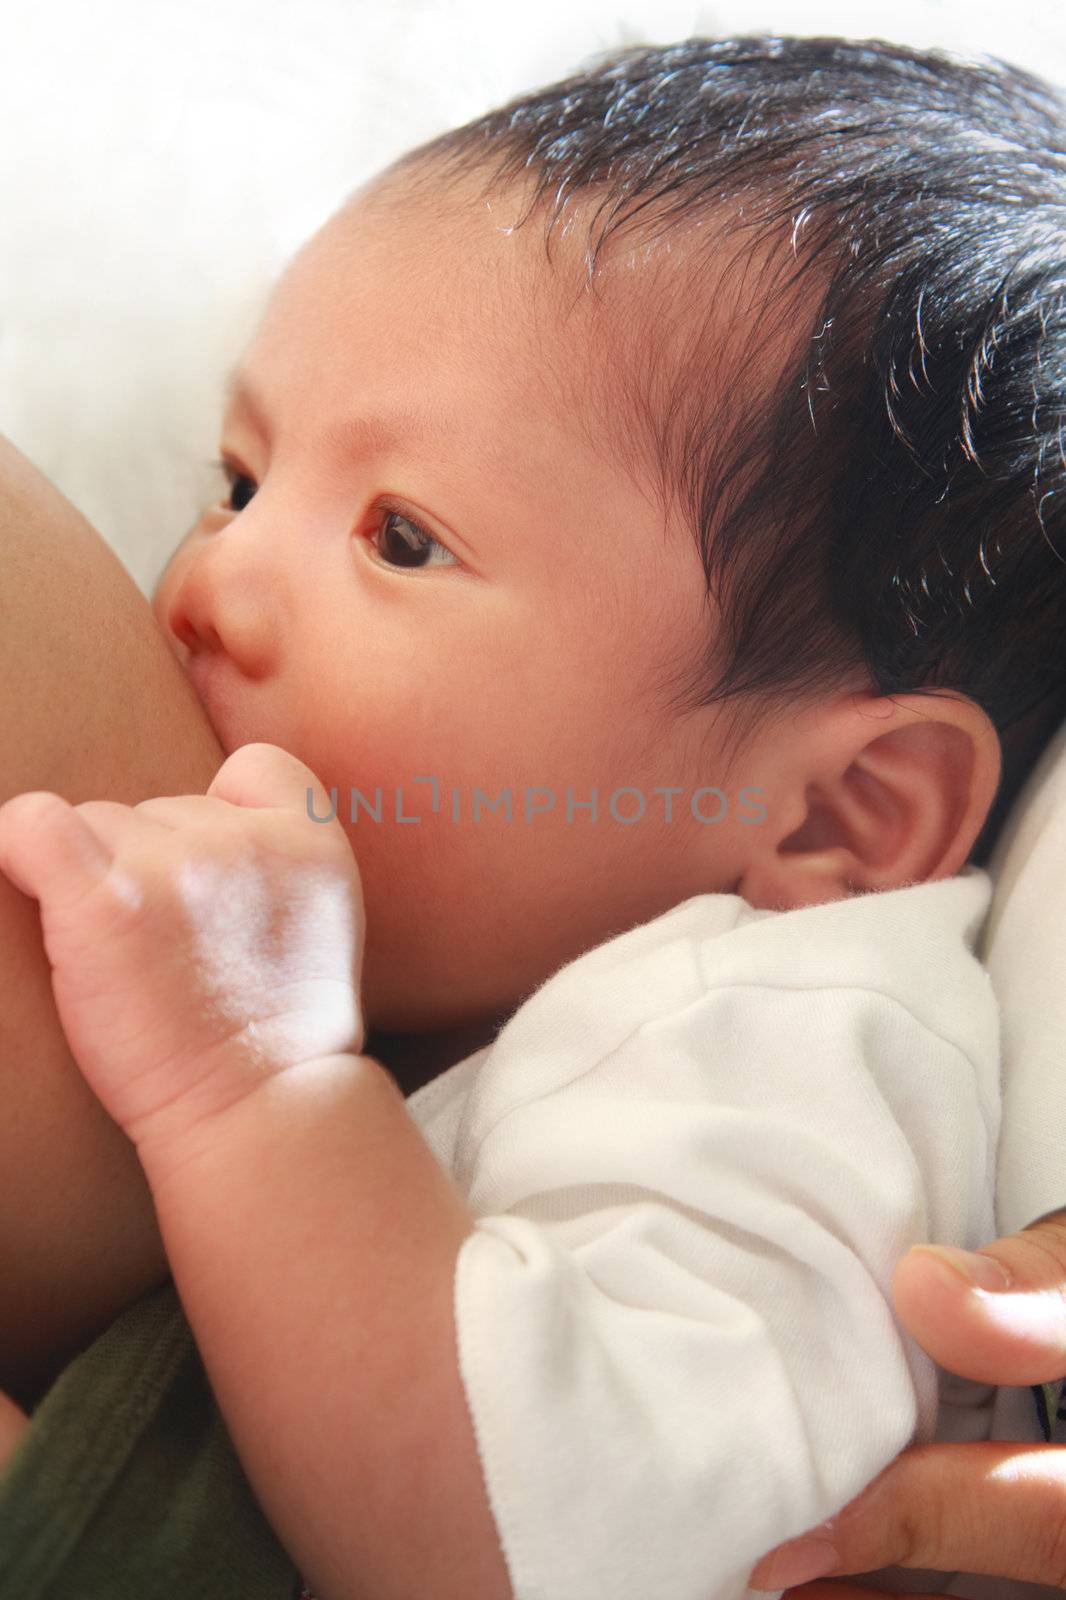 newborn baby breast feeding